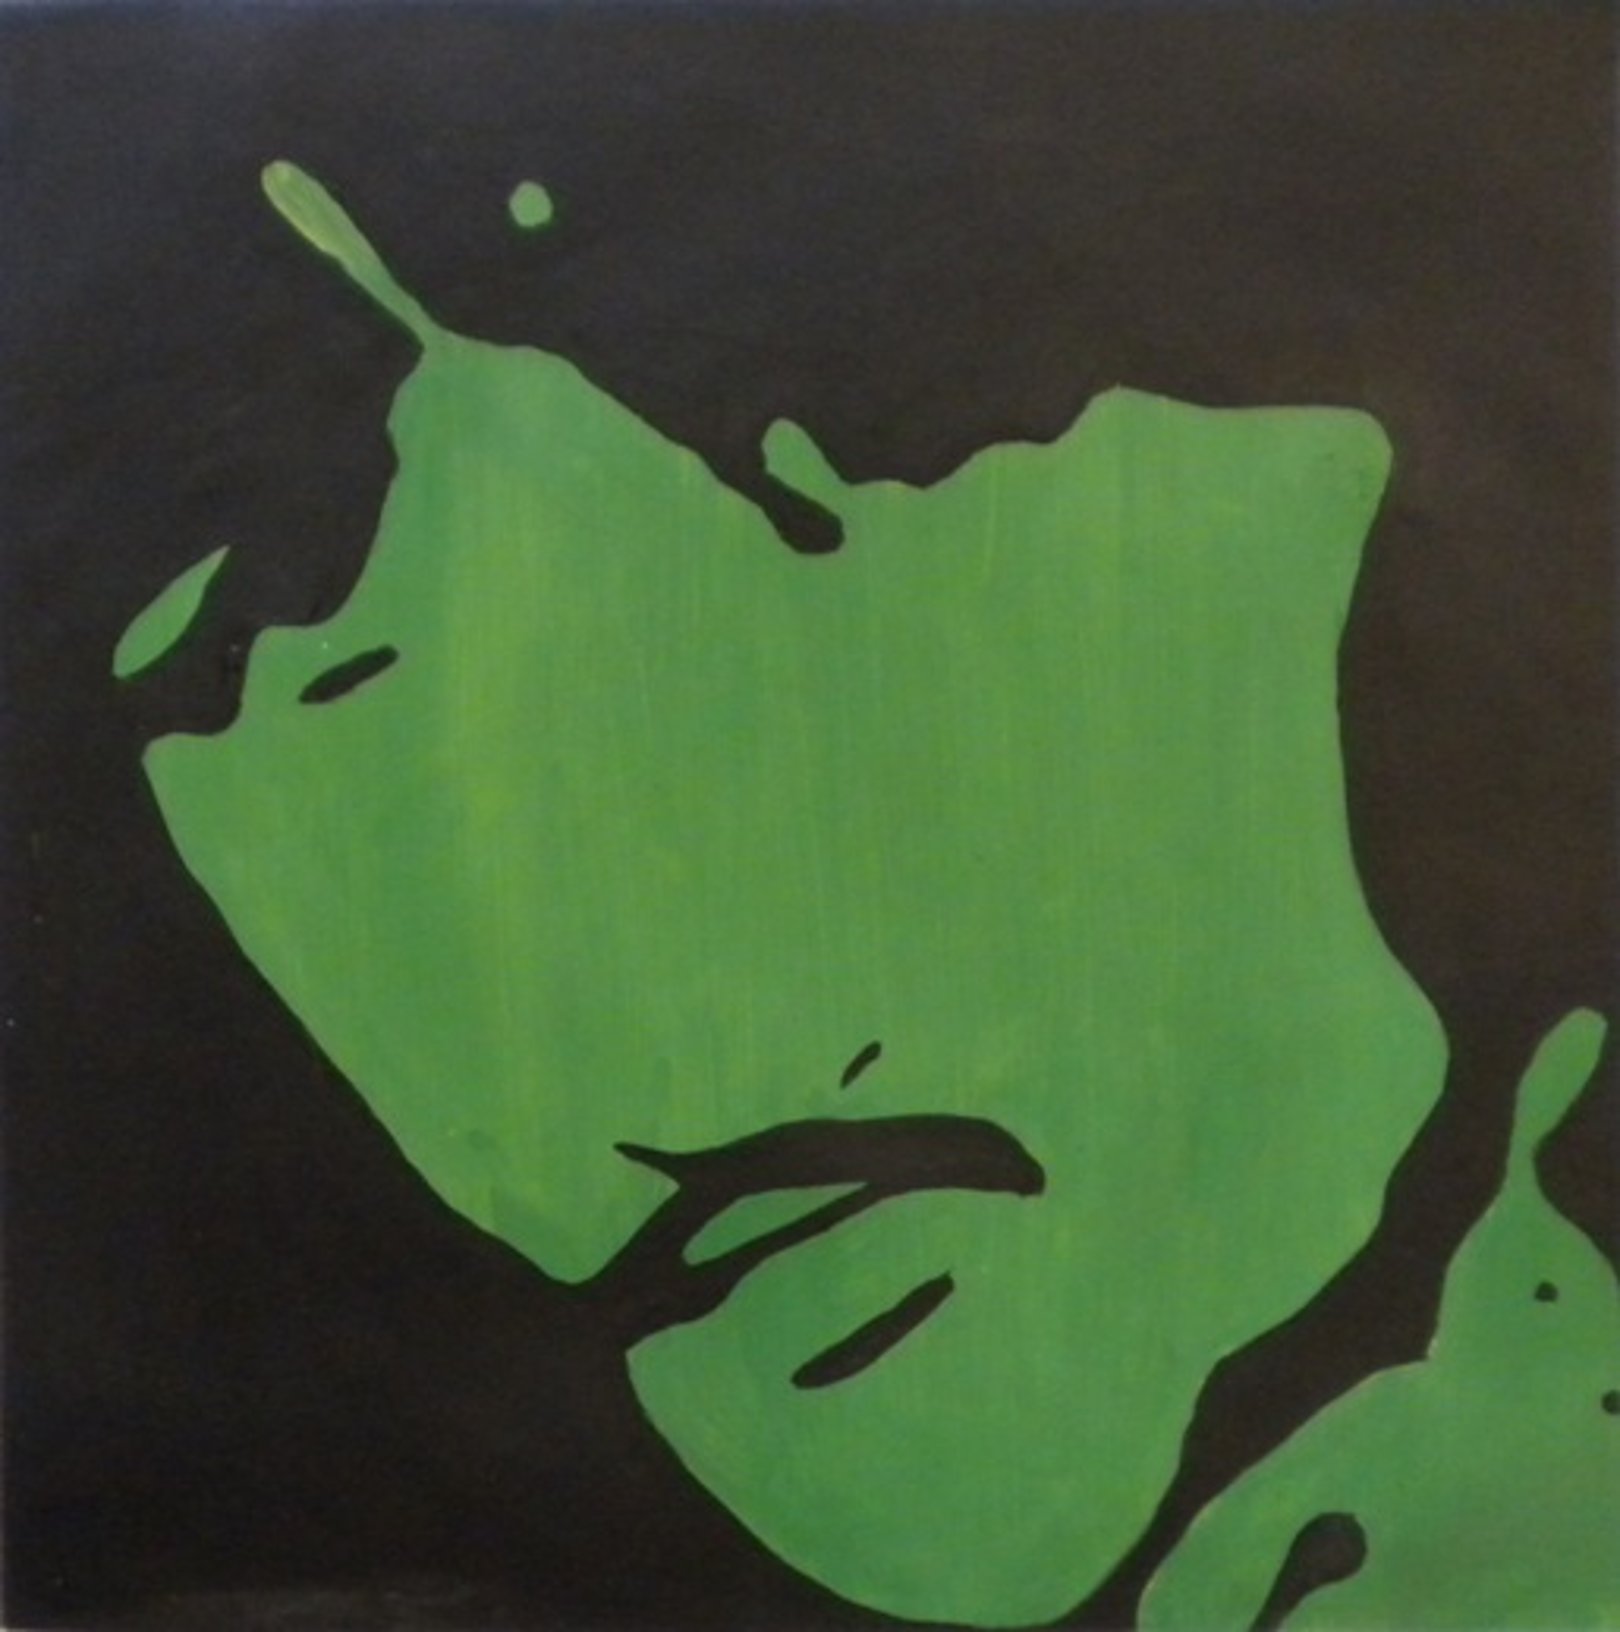 Ritratto in verde di Ringo Starr